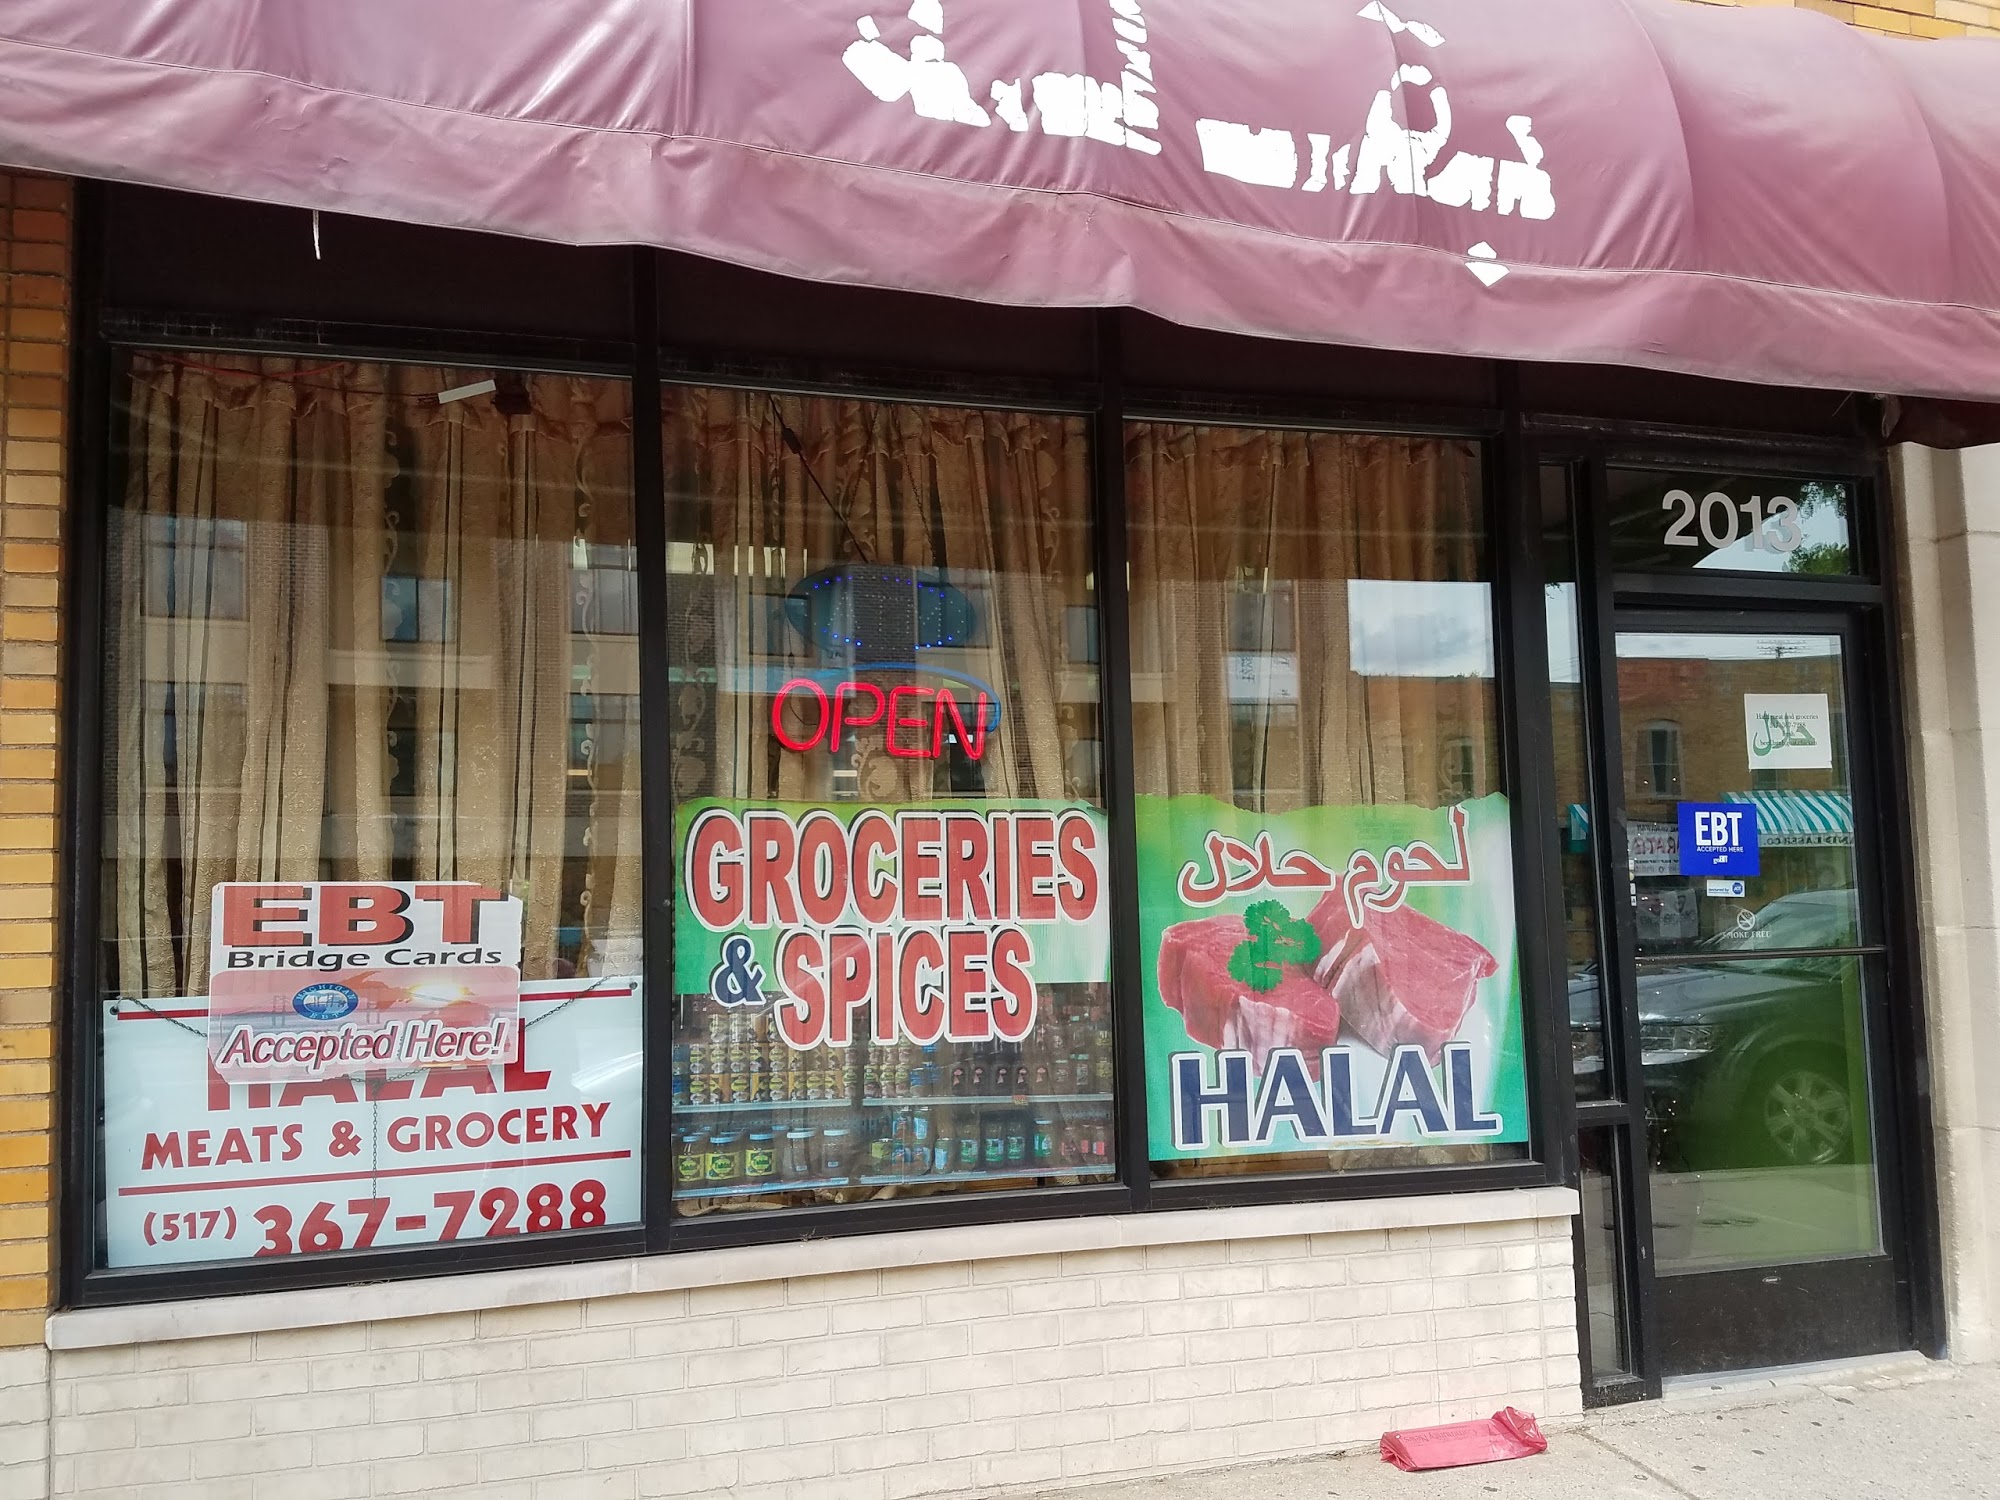 Halal Meats & Grocery